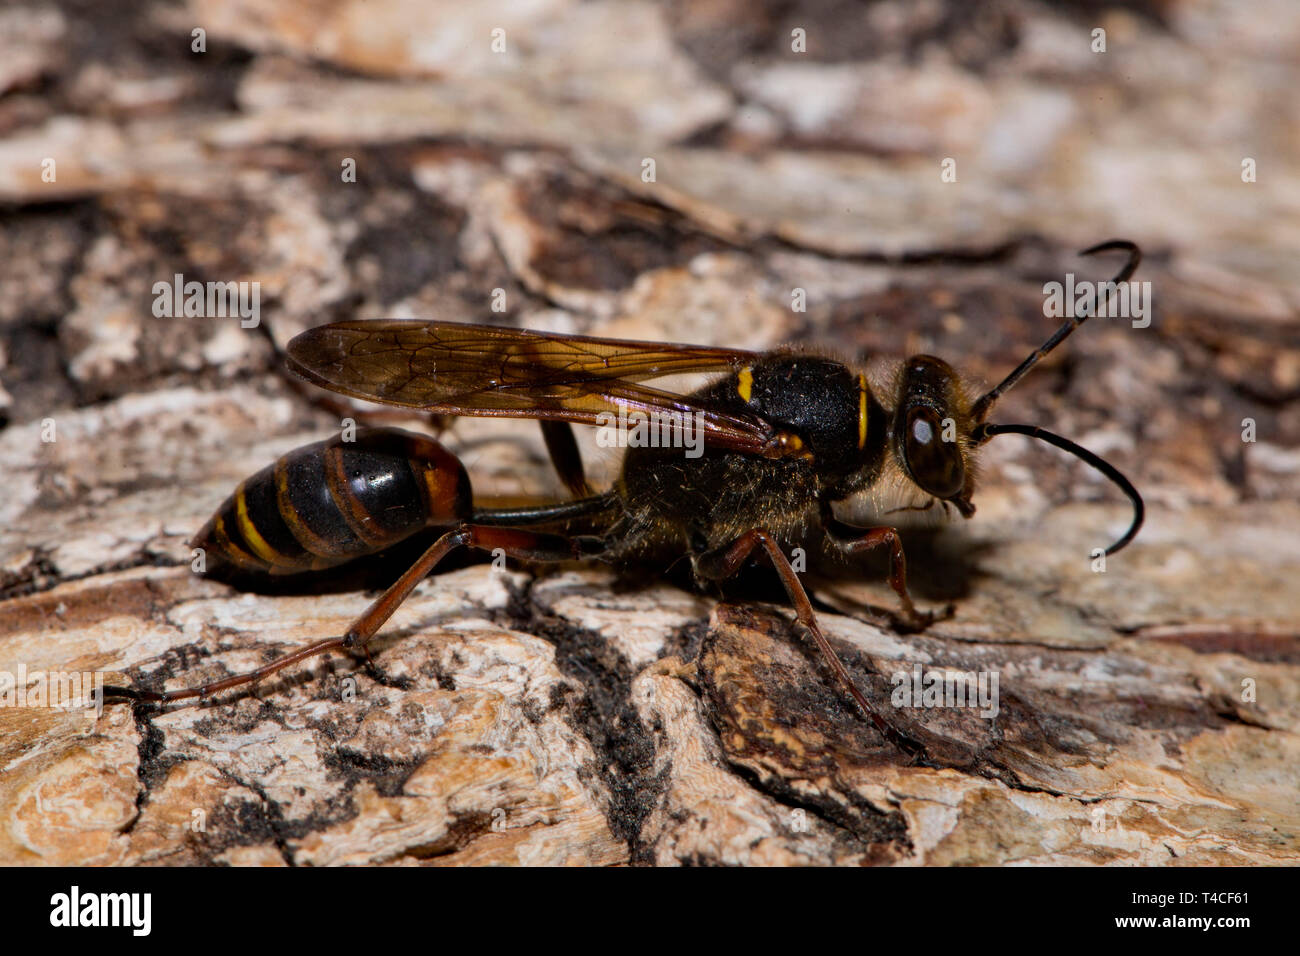 mud dauber wasp, (Sceliphron curvatum) Stock Photo